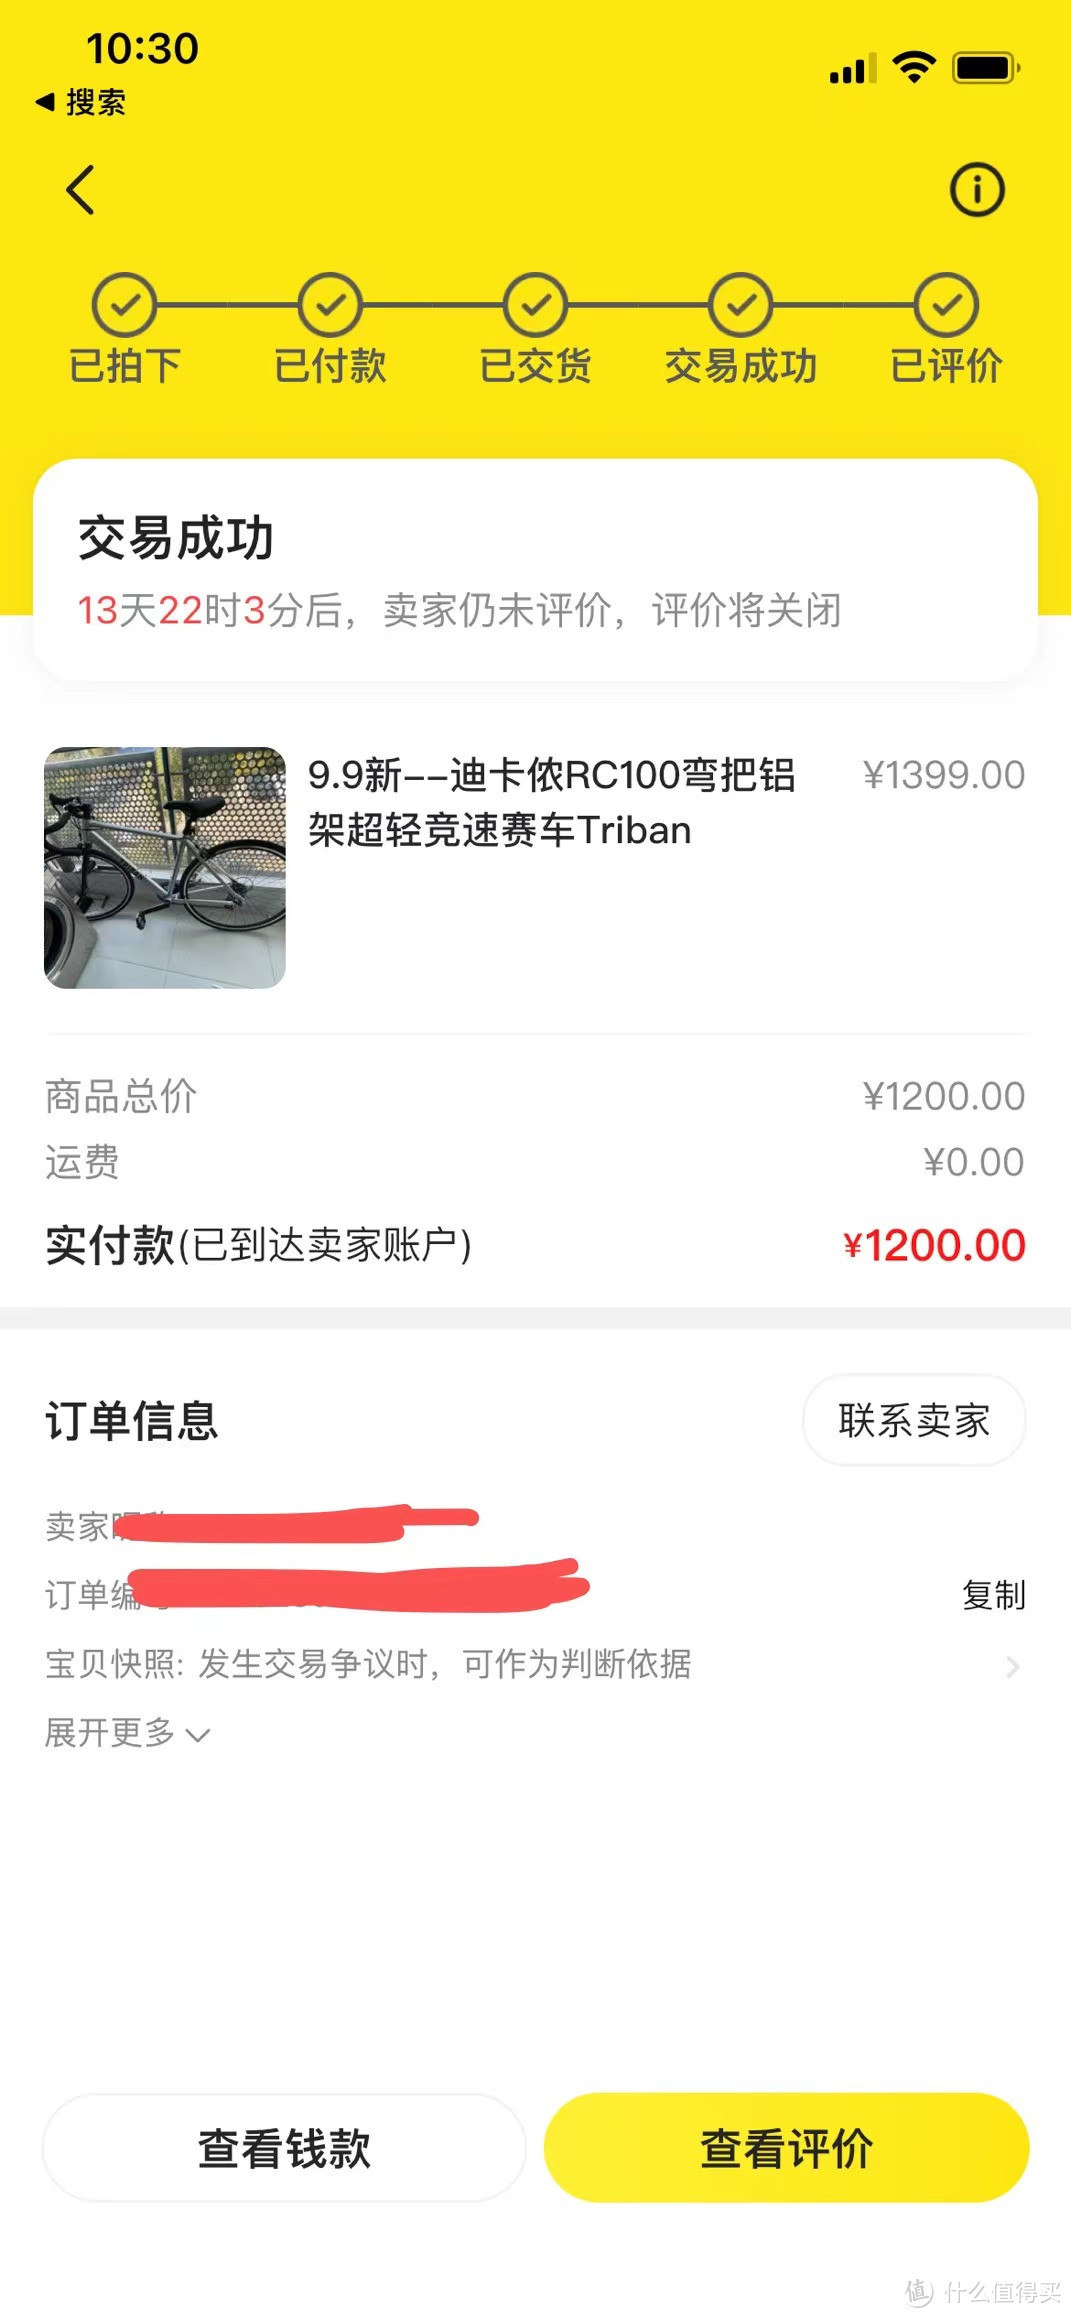 咸鱼花1200元买的迪卡侬RC100弯把自行车到底值不值？